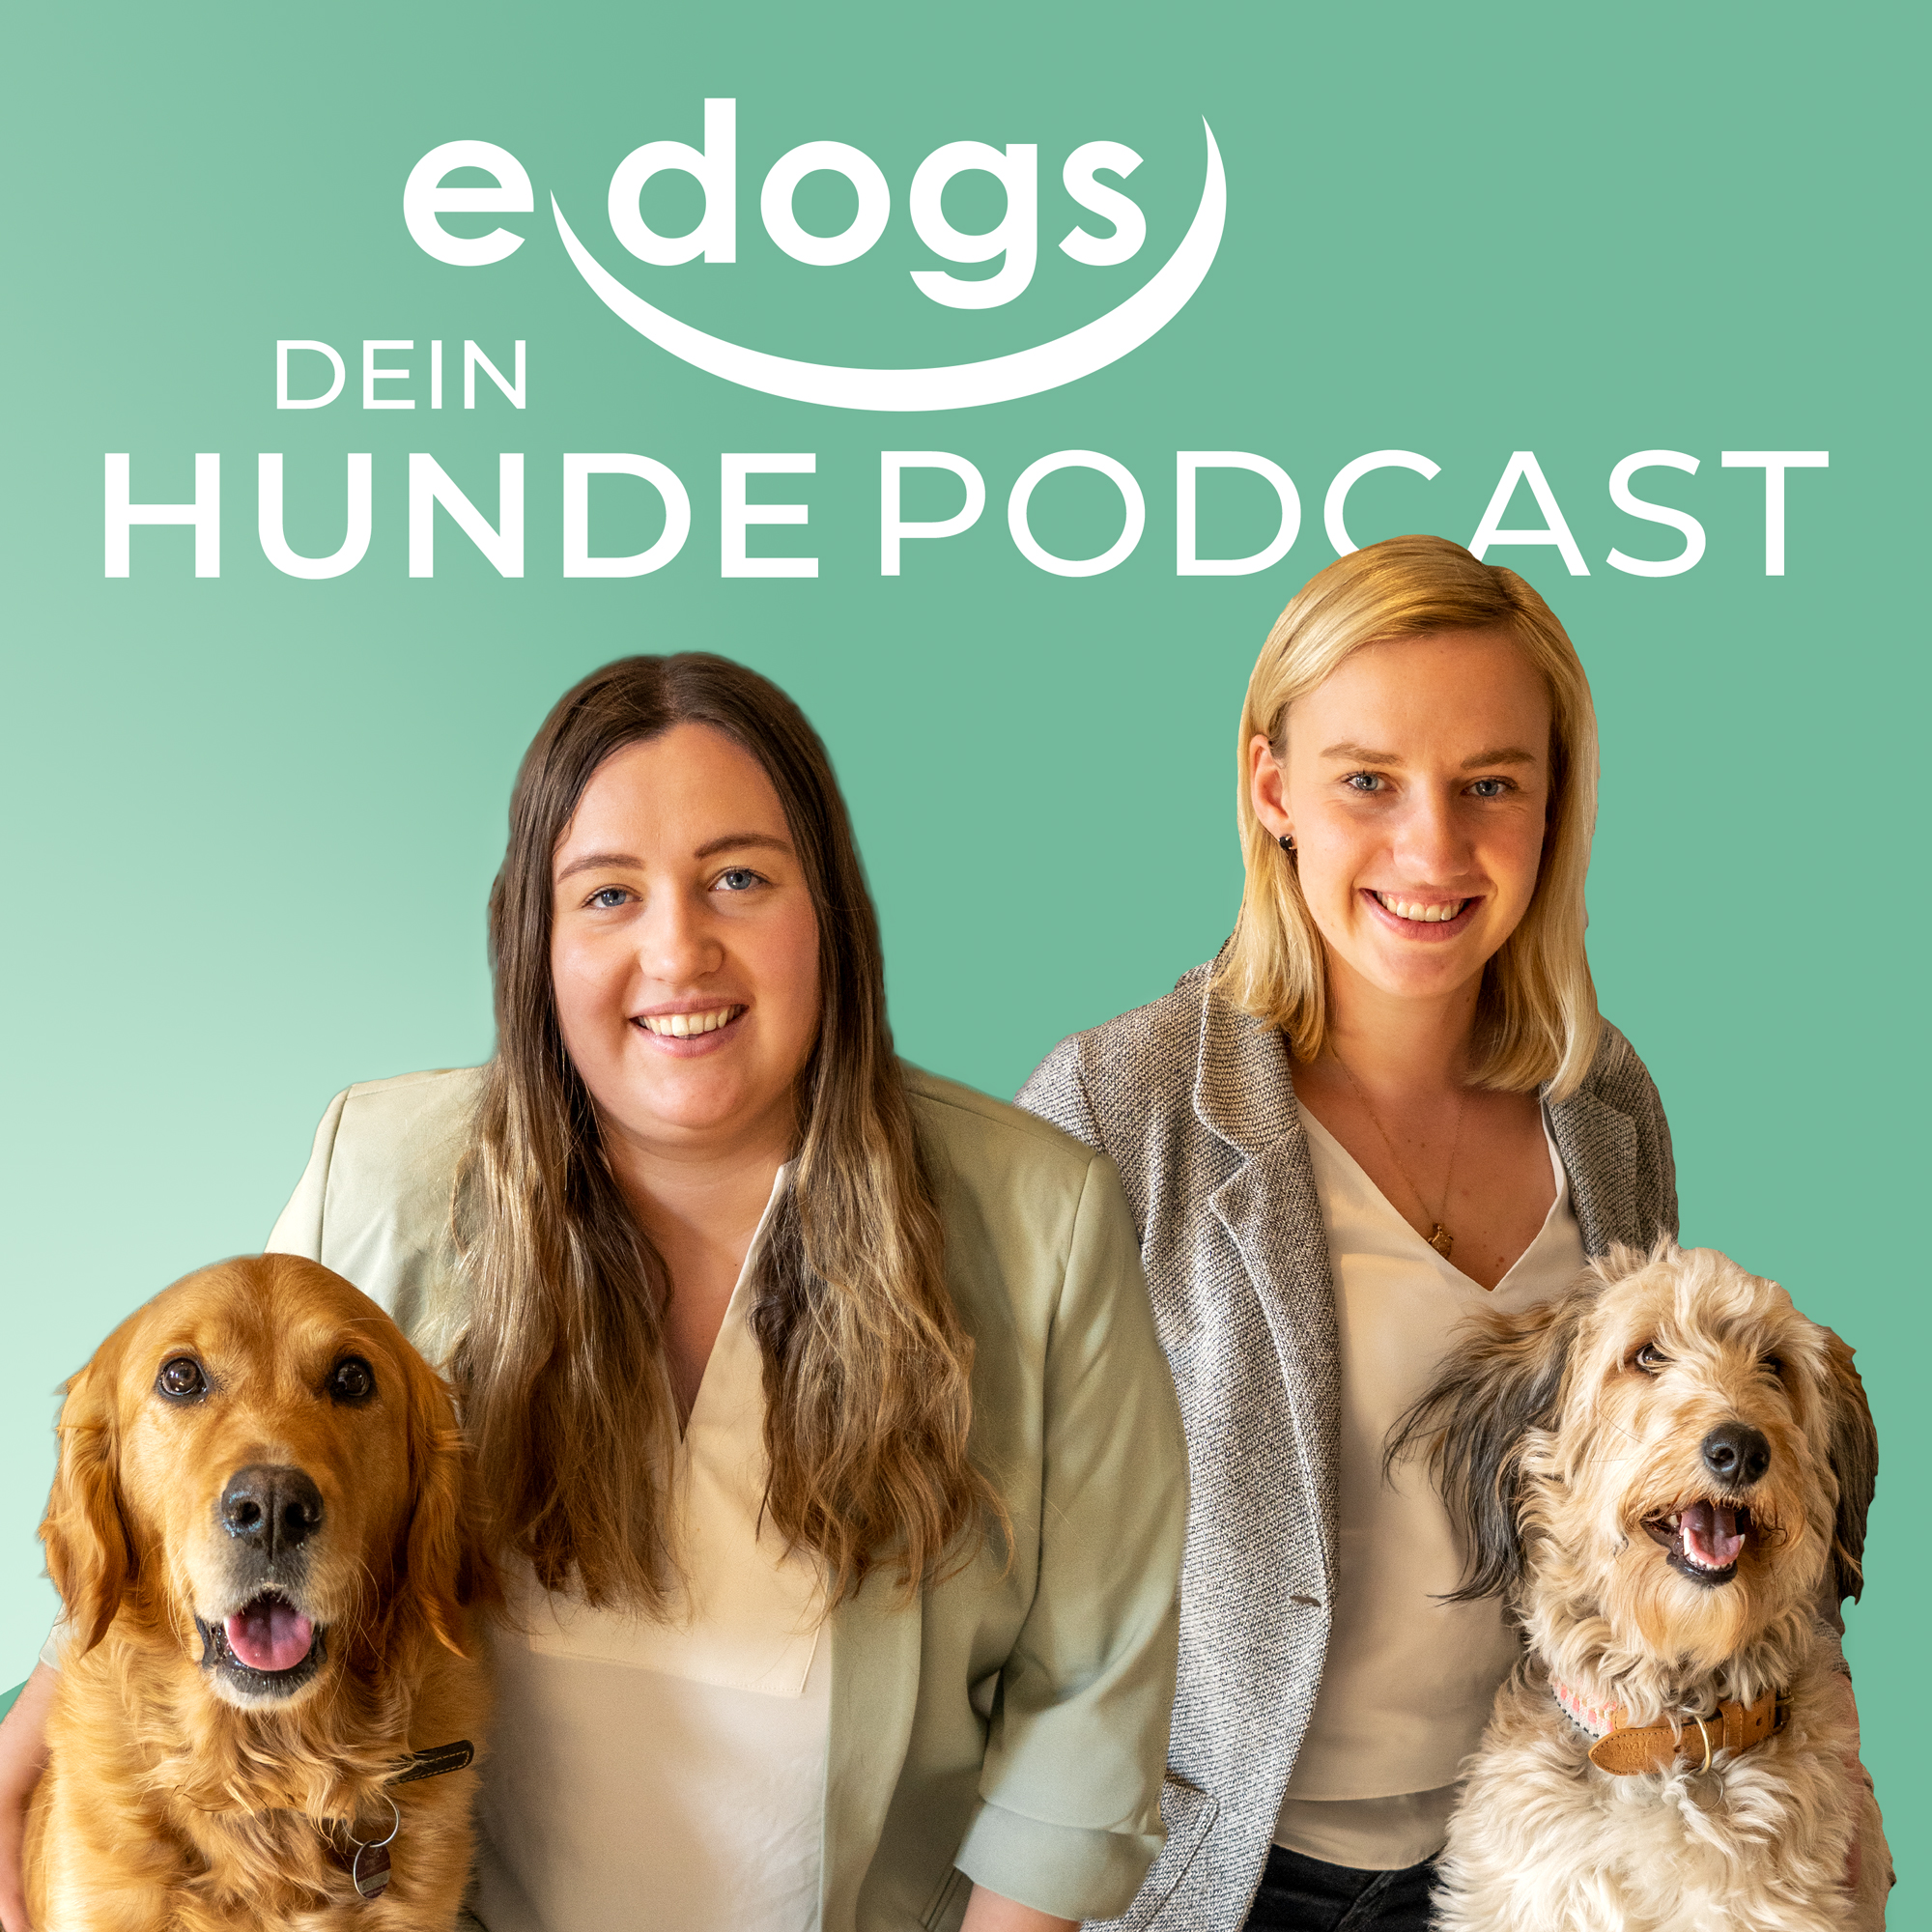 Hundepodcast von edogs: Michelle und Marie halten Dich über verschiedene Hundethemen auf dem Laufenden!